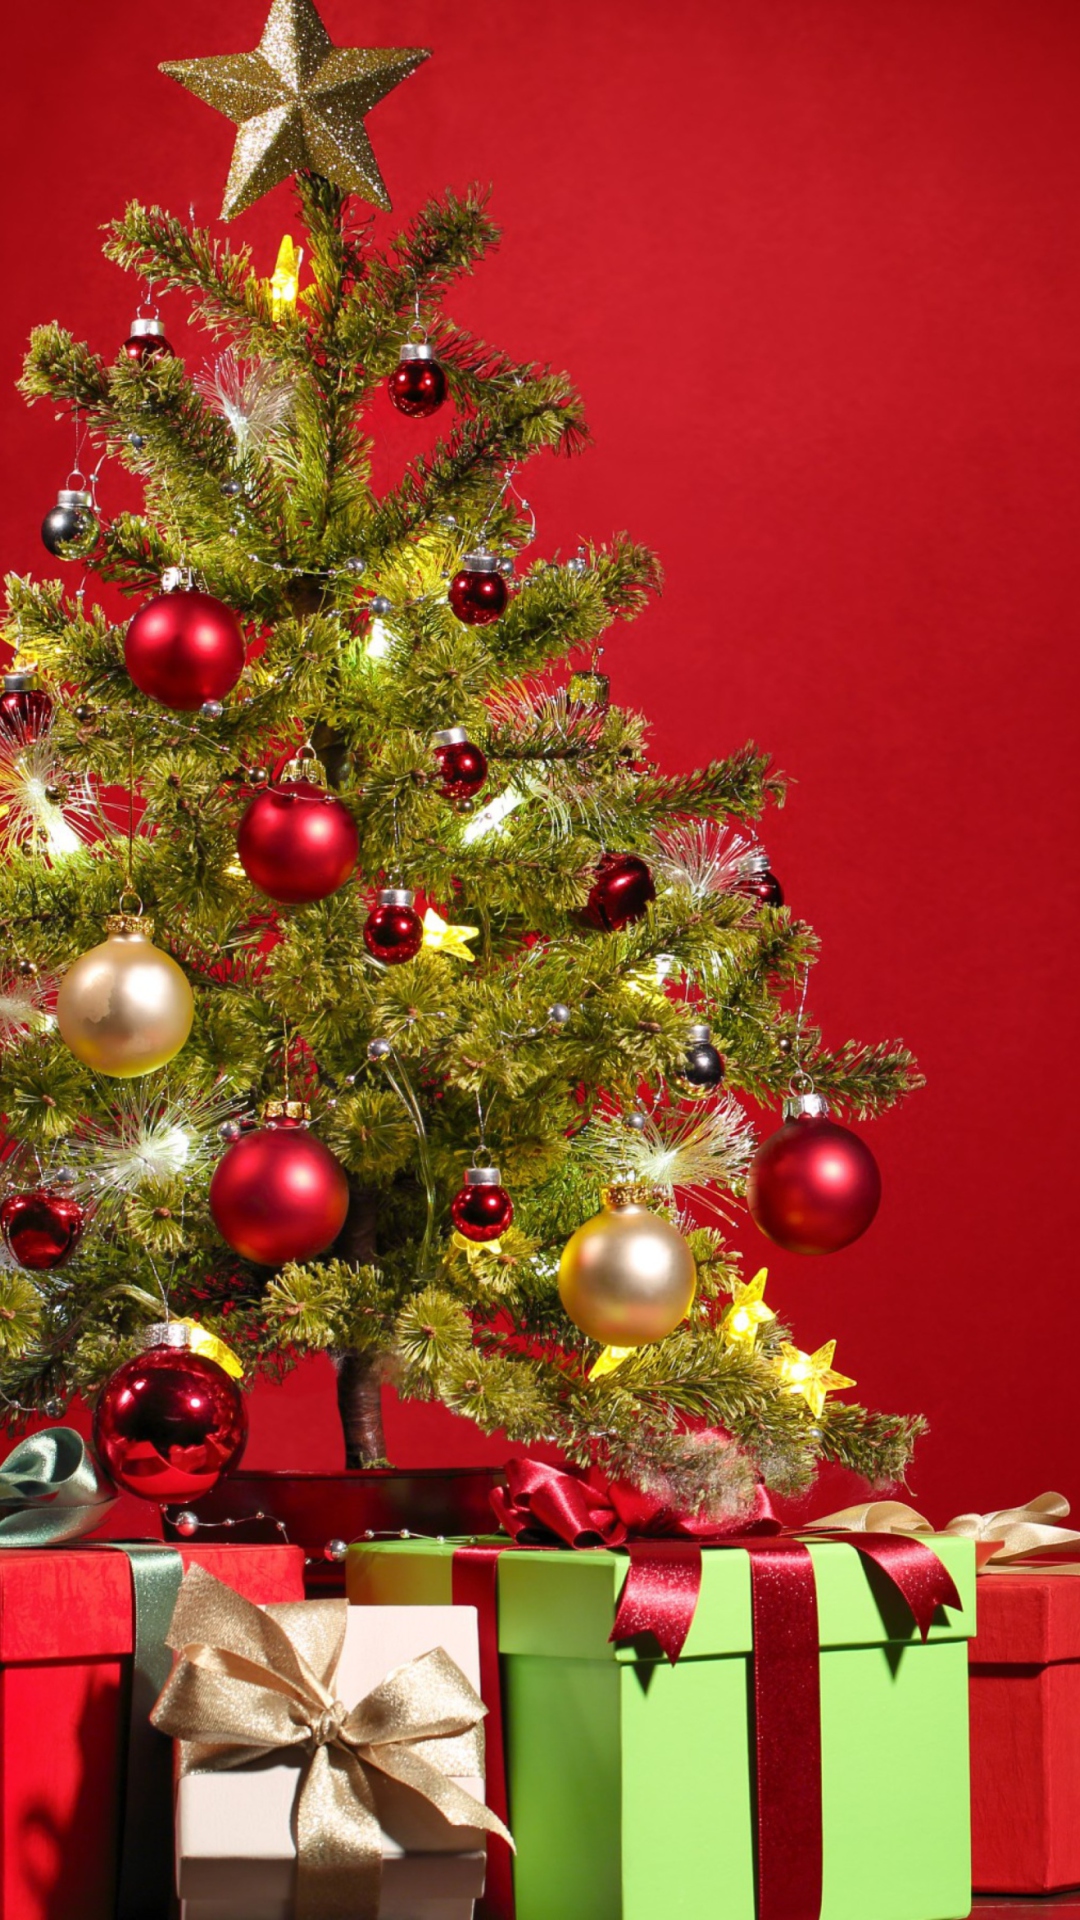 Christmas Tree wallpaper 1080x1920